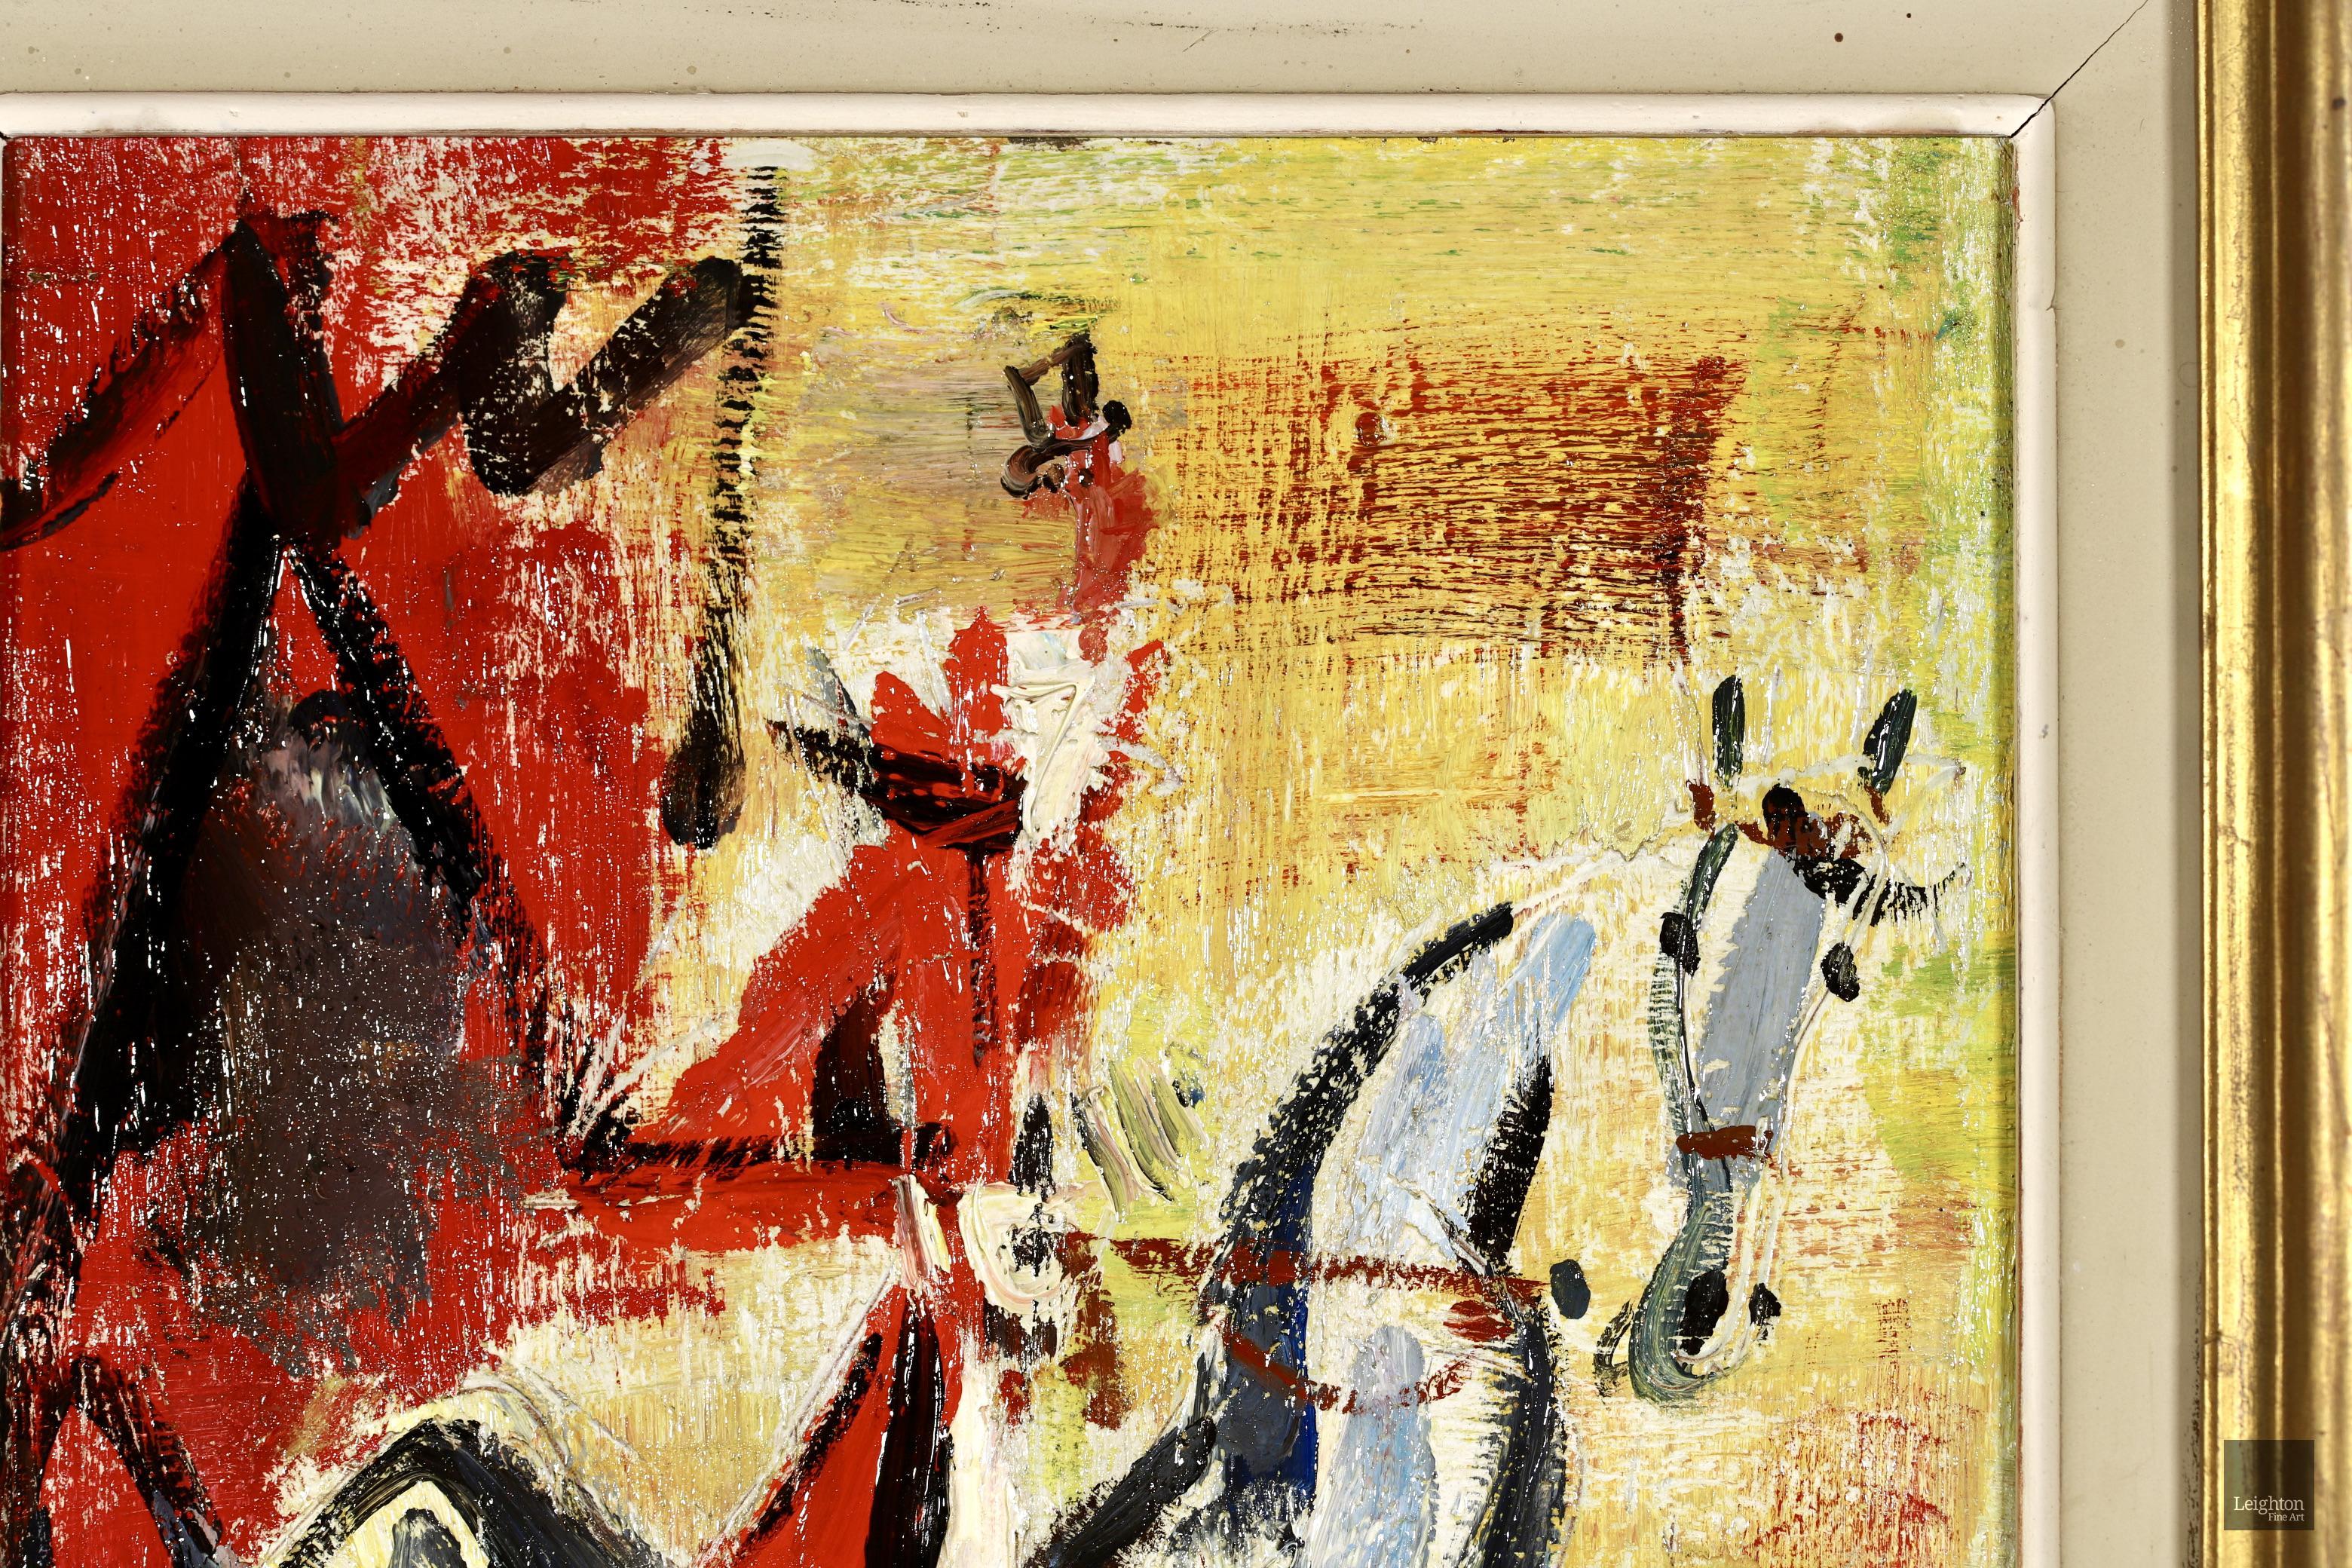 Signiertes expressionistisches Porträt in Öl auf Karton, um 1950, von dem französischen Maler und Graveur Gen Paul. Dieses charmante Werk zeigt einen Jockey in roter Jacke und Reithose, der auf einem weißen Pferd sitzt. Bei diesem Werk handelt es